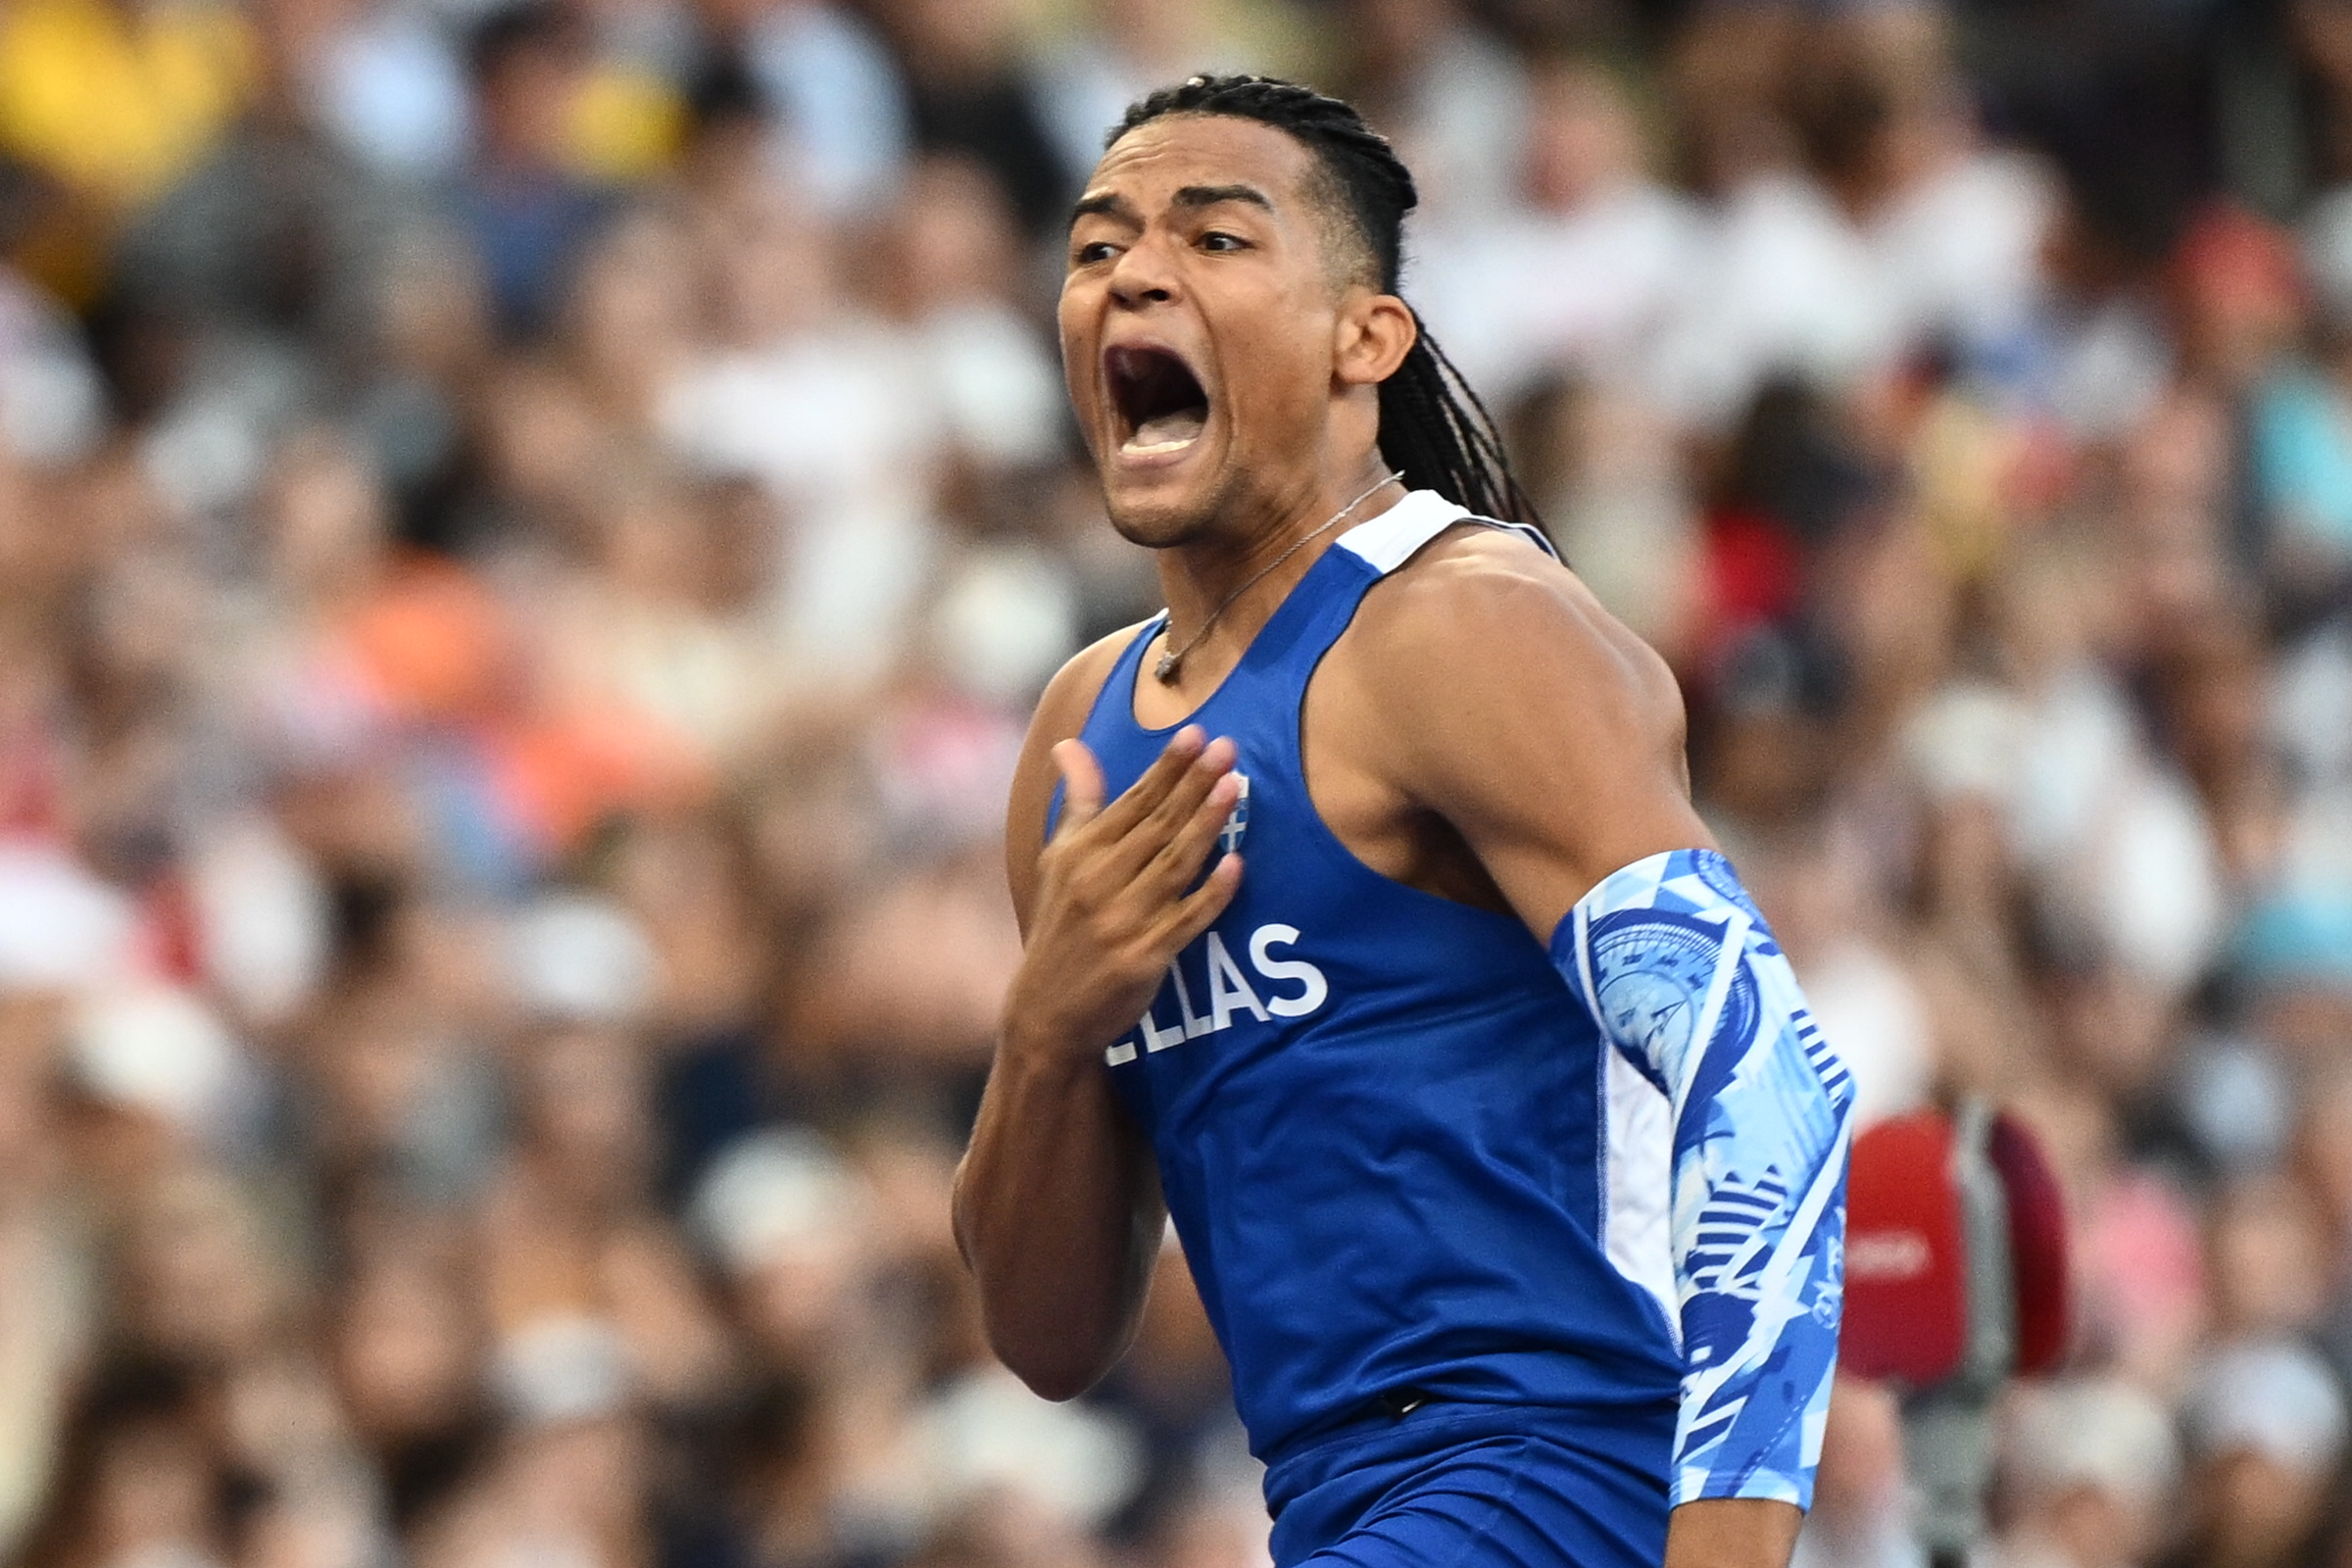 Εμμανουήλ Καραλής: Το απίστευτο άλμα του στα 5.90μ. στον τελικό του επί κοντώ των Ολυμπιακών Αγώνων